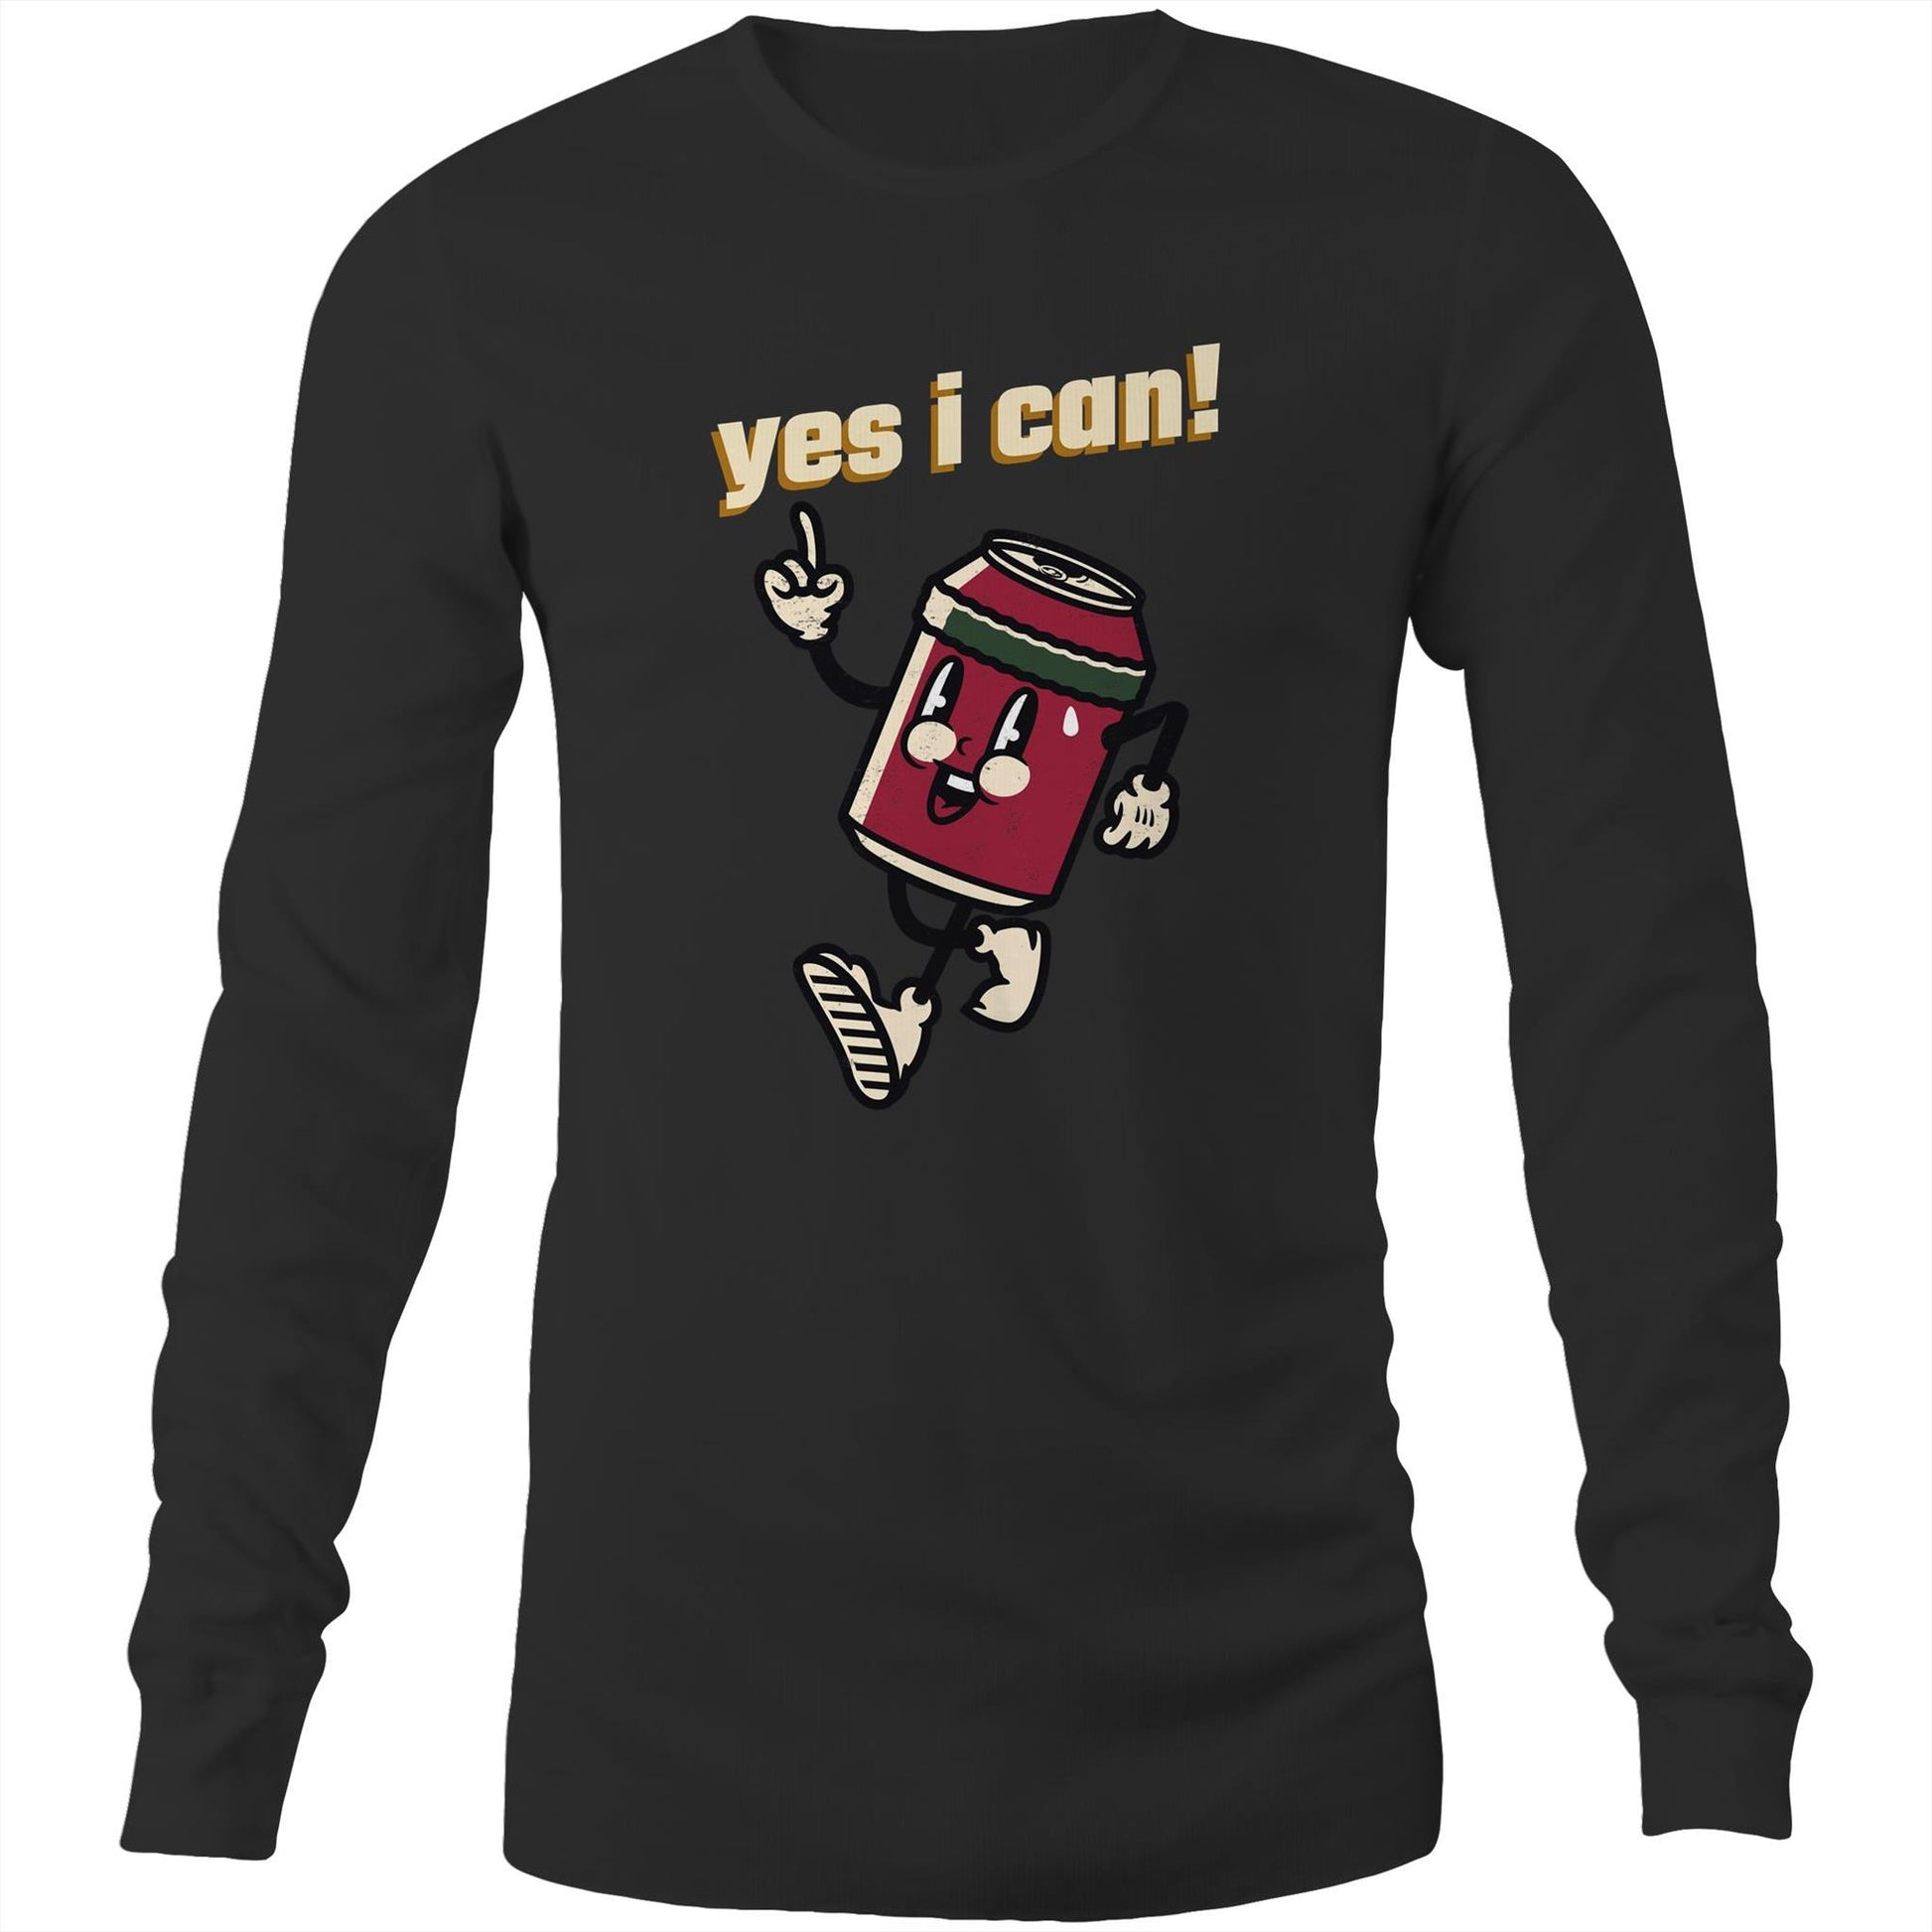 Yes I Can! - Long Sleeve T-Shirt Black Unisex Long Sleeve T-shirt Motivation Retro